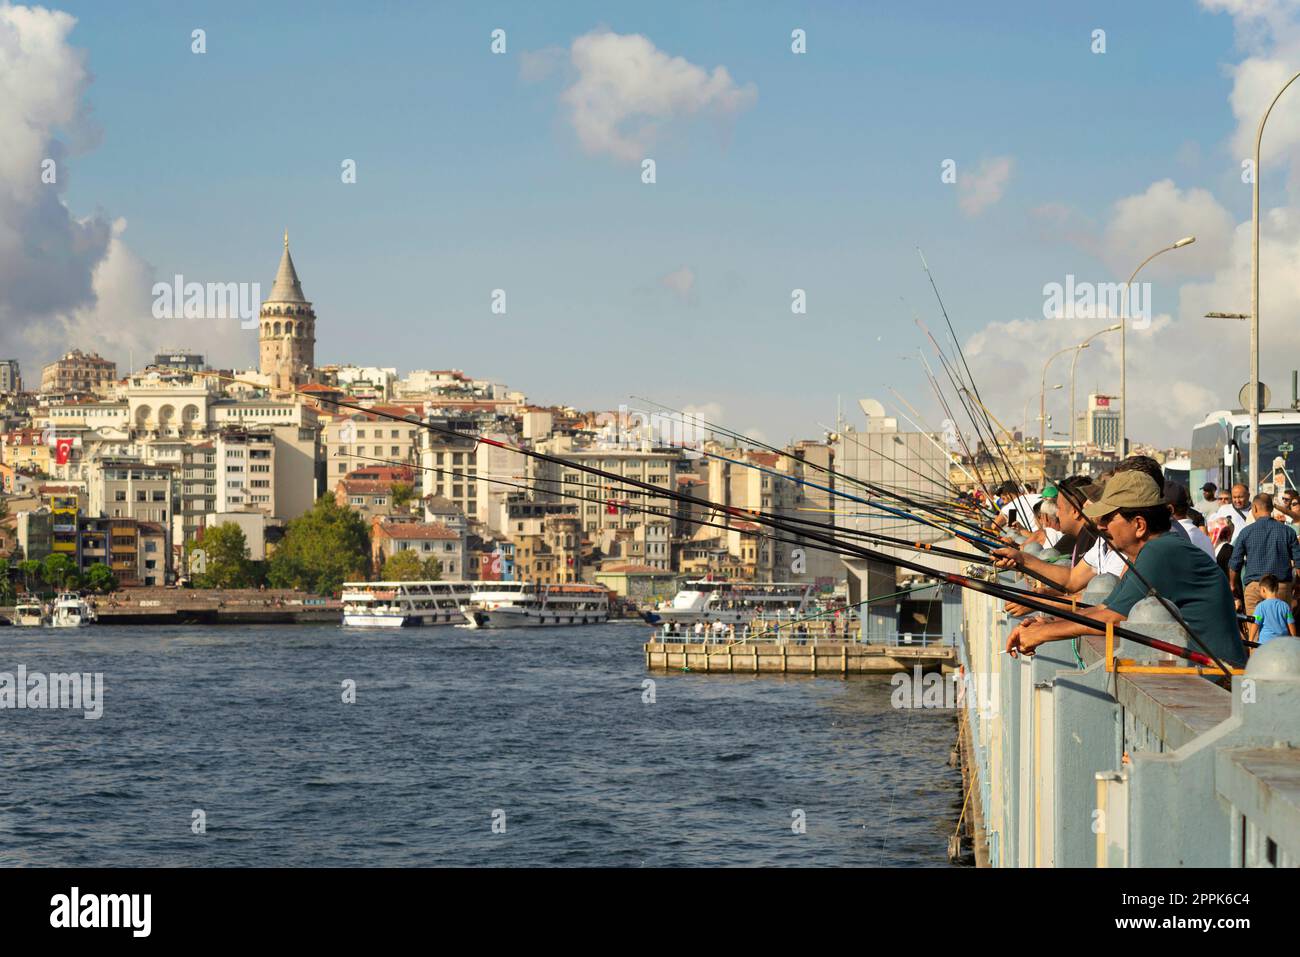 Los lugareños pescan en el puente de Gálata con el horizonte de la ciudad en el fondo, incluyendo la Torre de Gálata, Eminonu, Estambul, Turquía Foto de stock